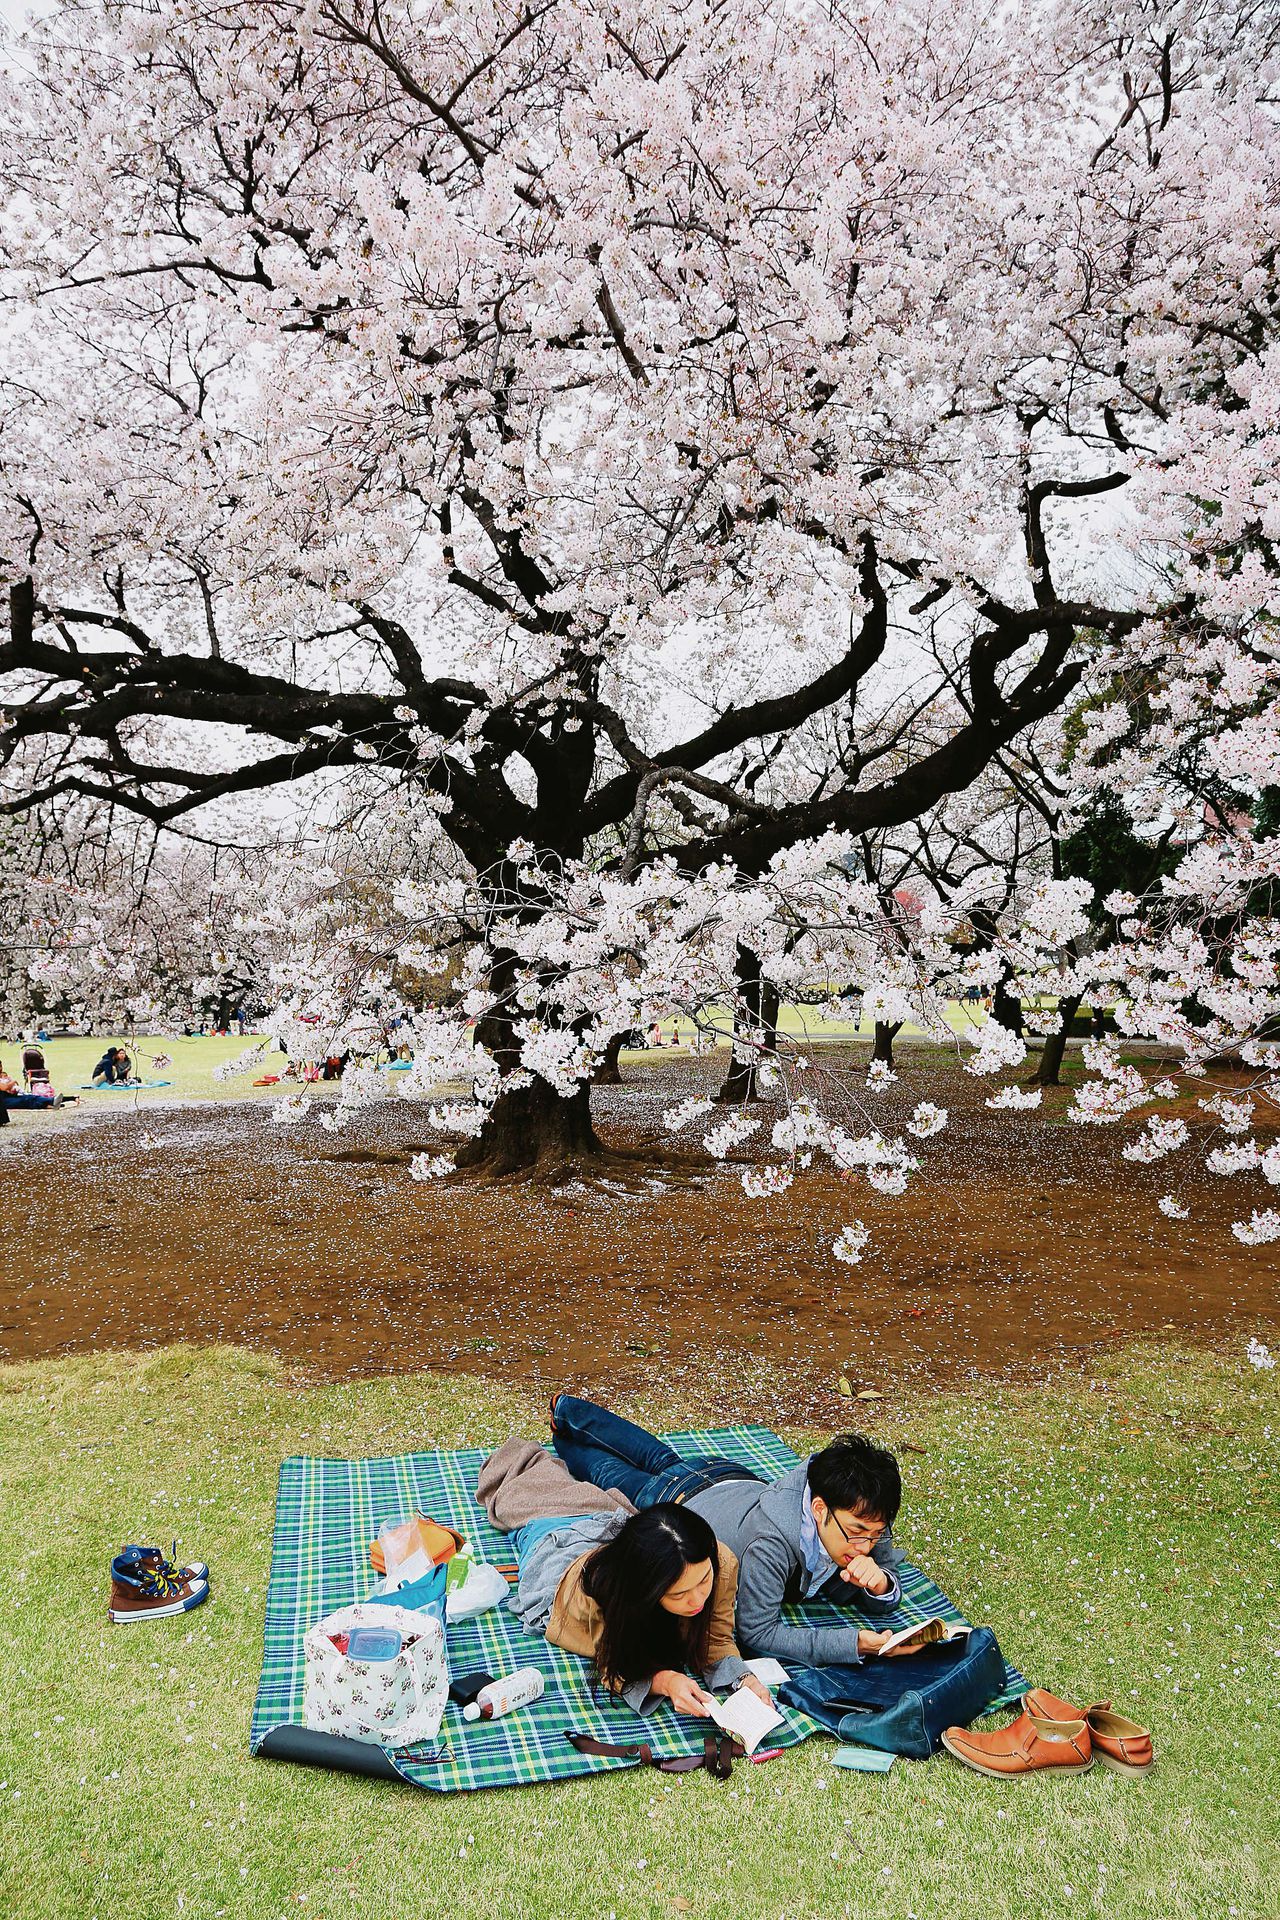 Picknick in Tokyo